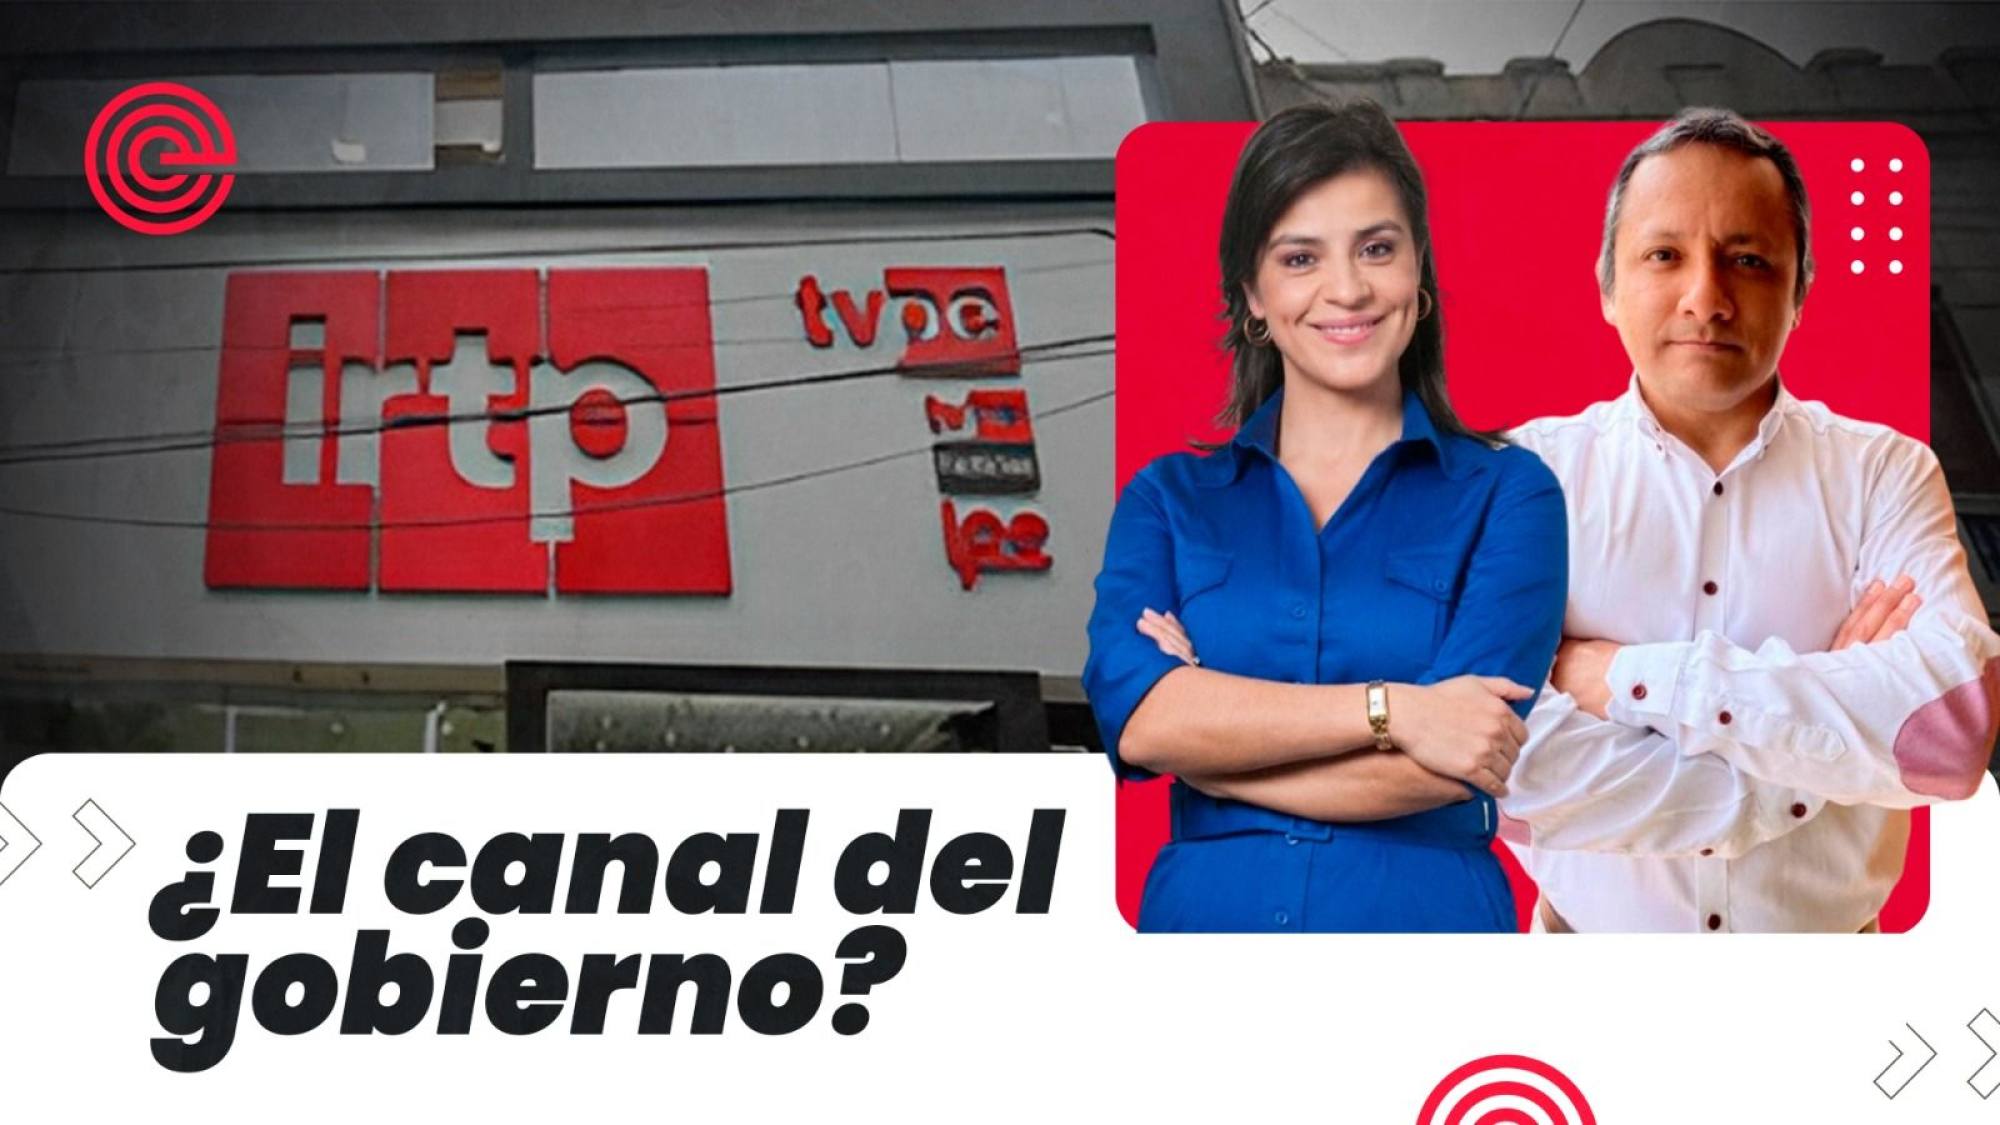 Réplica | ¿Se apoderan de TV Perú? | Renovación no quiere derechos humanos, Epicentro TV